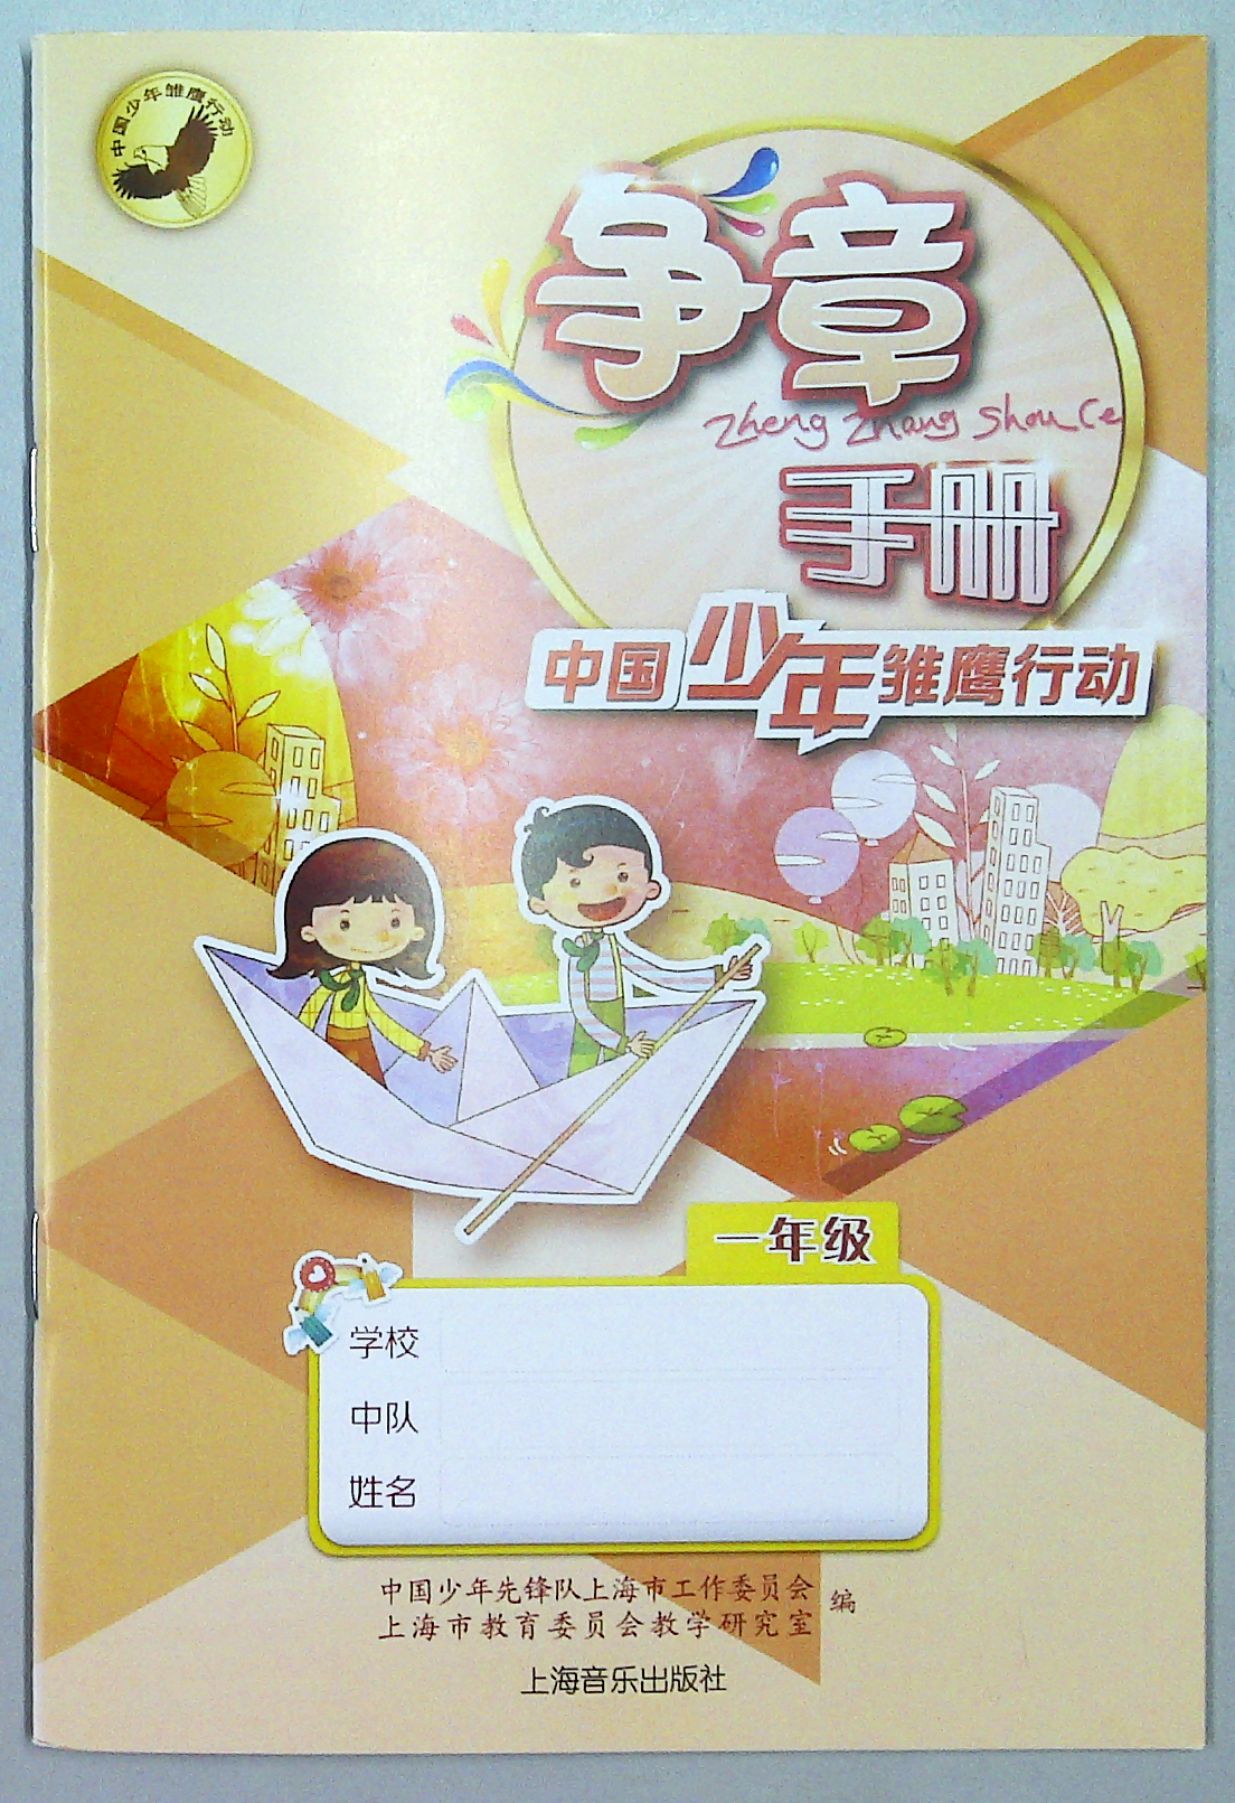 正版上海小学课本中国少年雏鹰行动《争章手册》一年级上海音乐社